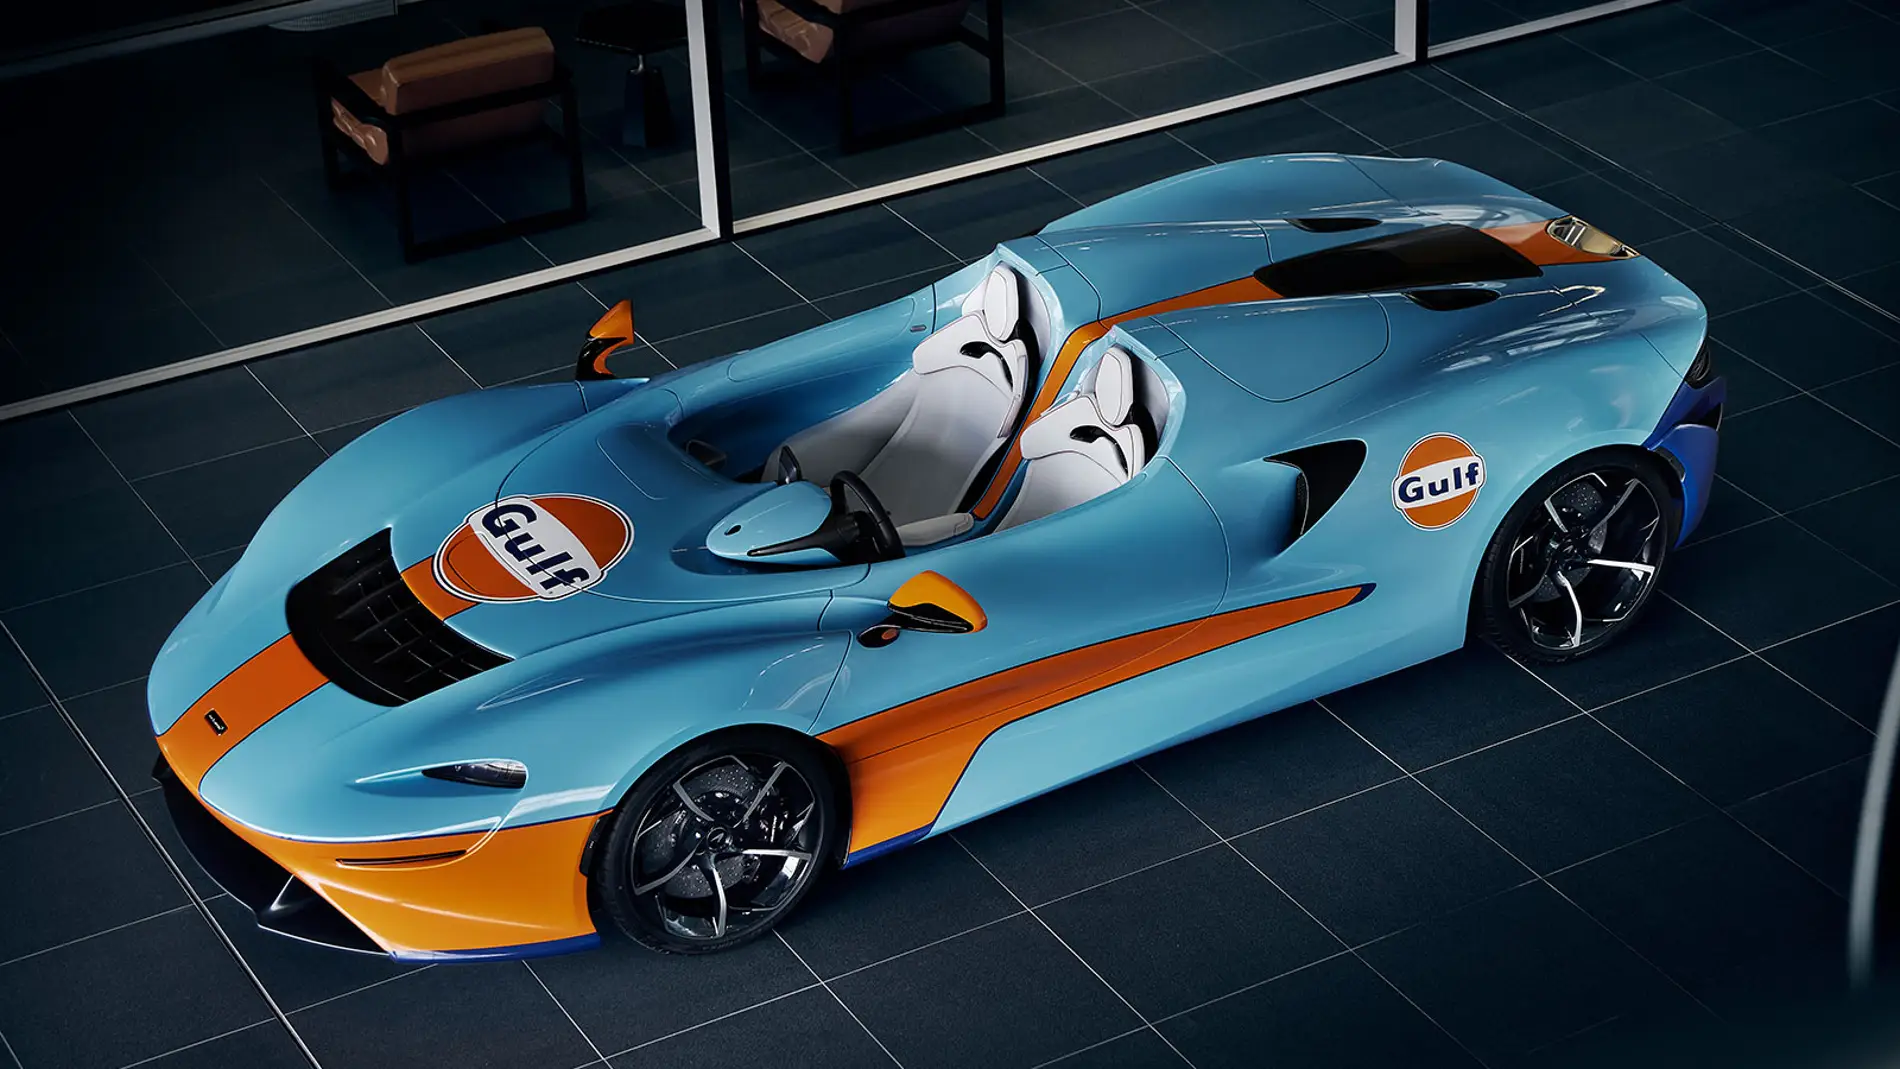 El McLaren Elva ha recibido uno de los diseños más clásicos de la historia de la competición